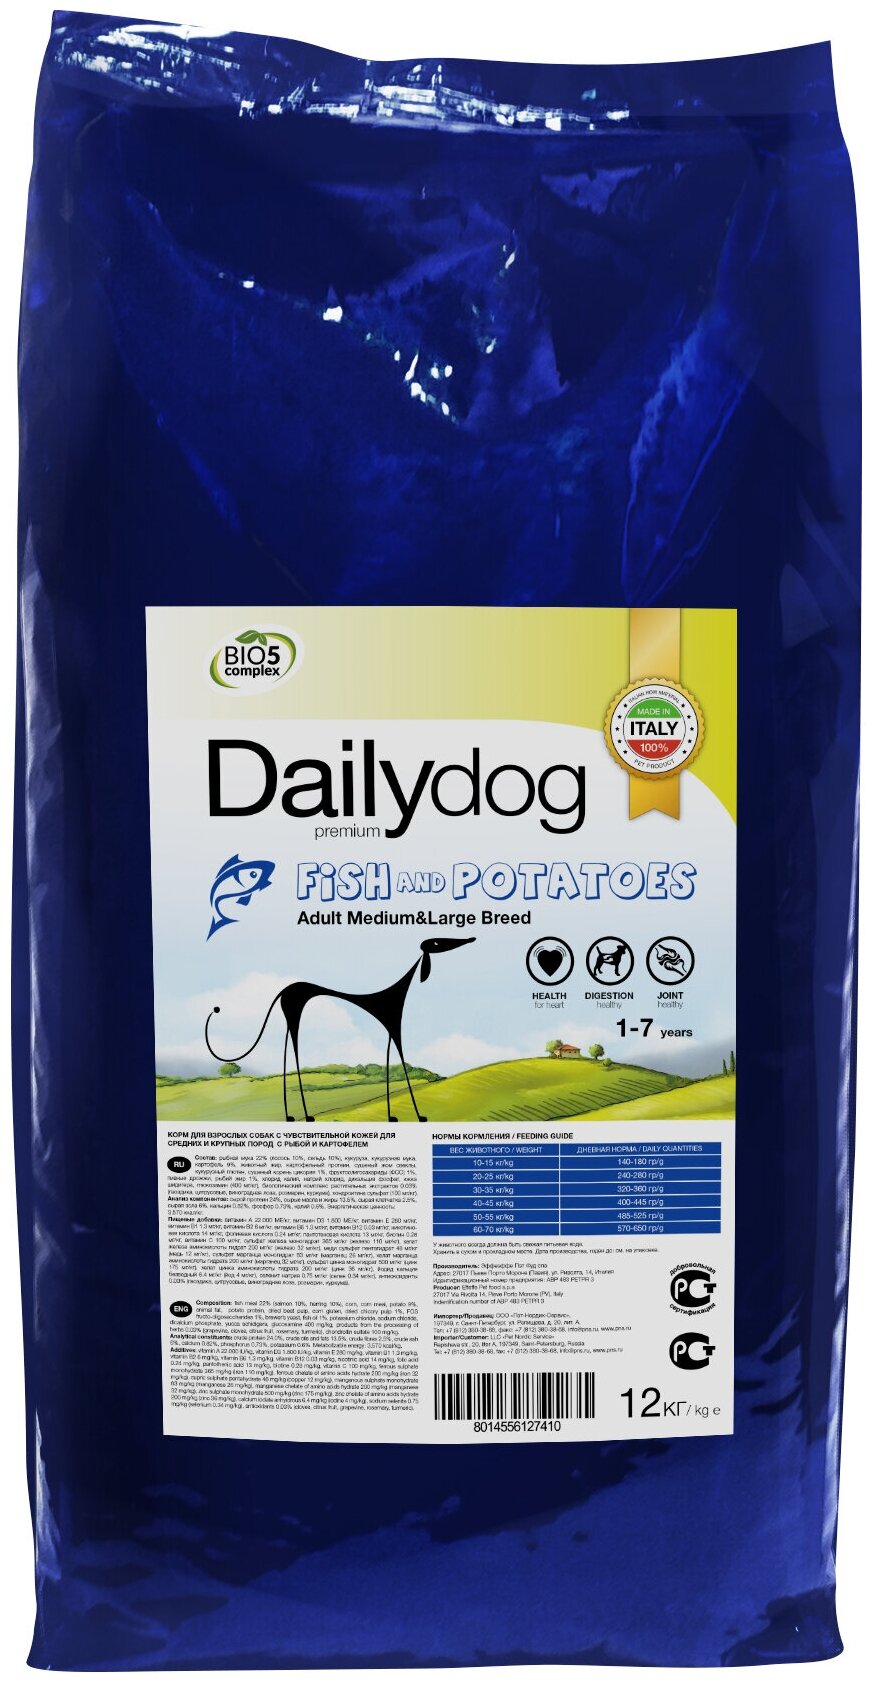 DailyDog Adult Medium&Large Breed Fish and Potatoes - корм для взрослых собак средних и крупных пород с рыбой и картофелем (12 кг)